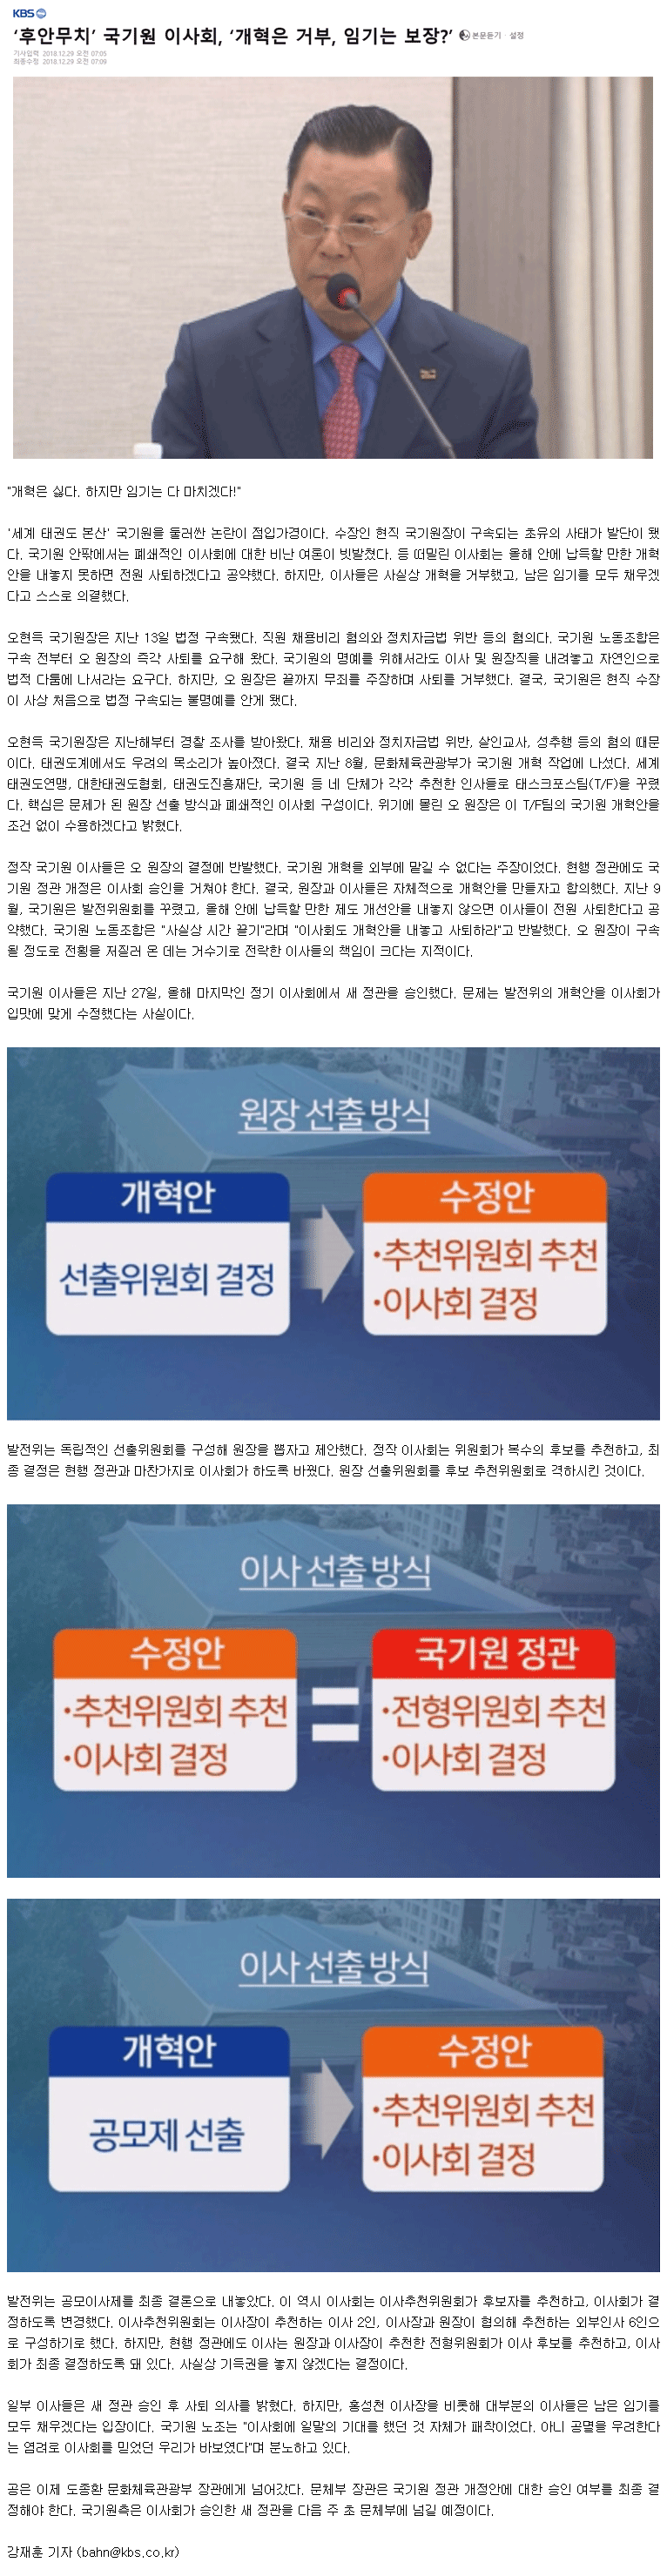 20181229_후안무치국기원이사회개혁은거부임기는보장_KBS.gif